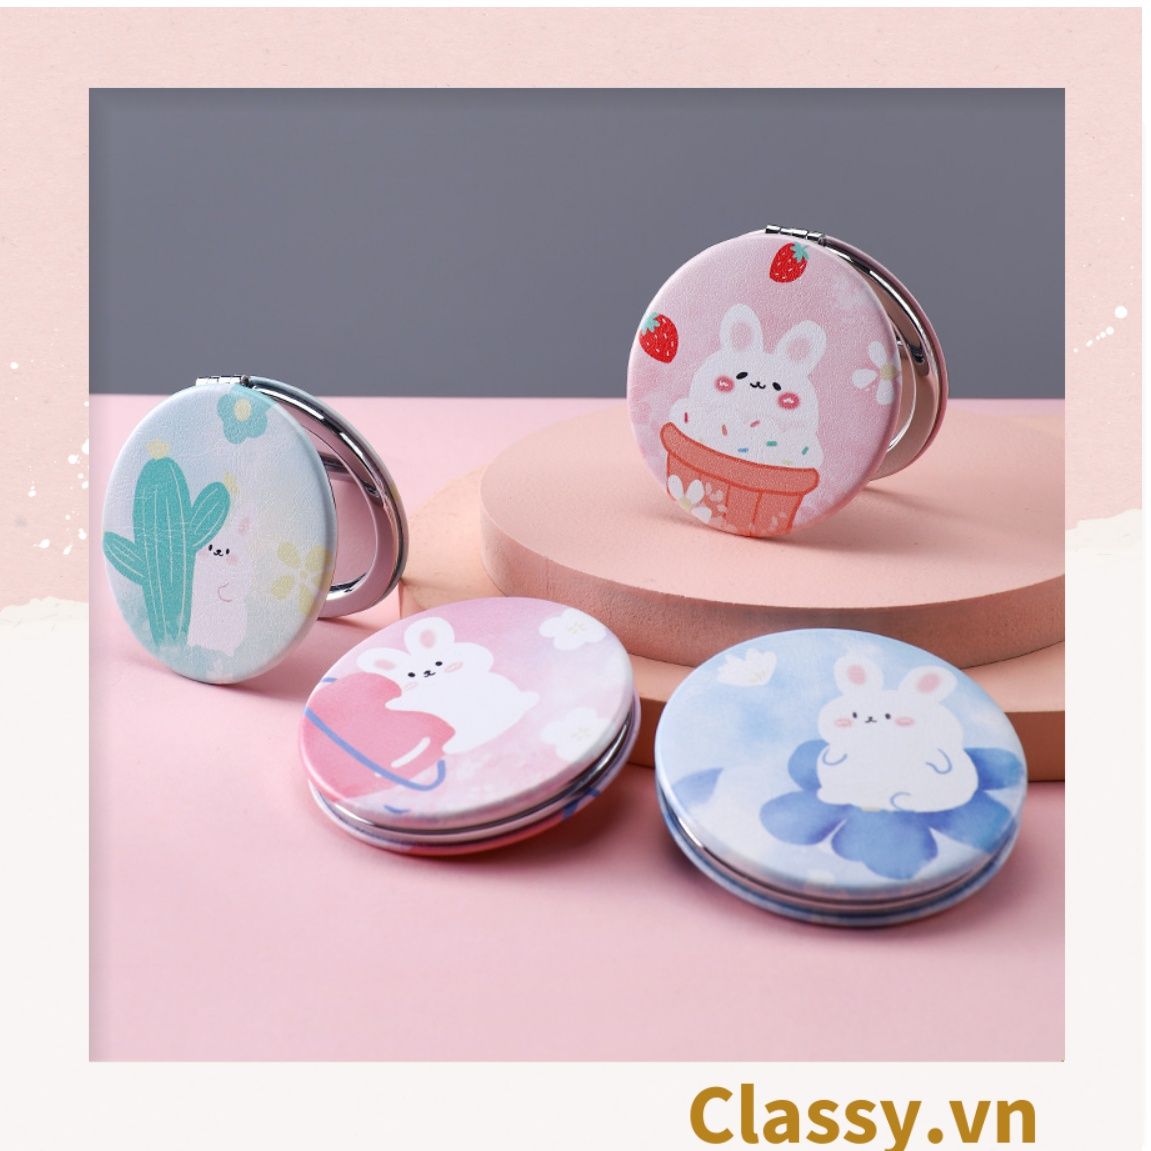  Gương trang điểm cầm tay size lớn họa tiết  2 mặt bỏ túi, Gương cầm tay mini Hàn Quốc siêu cute, Gương hoạt hình PK570 